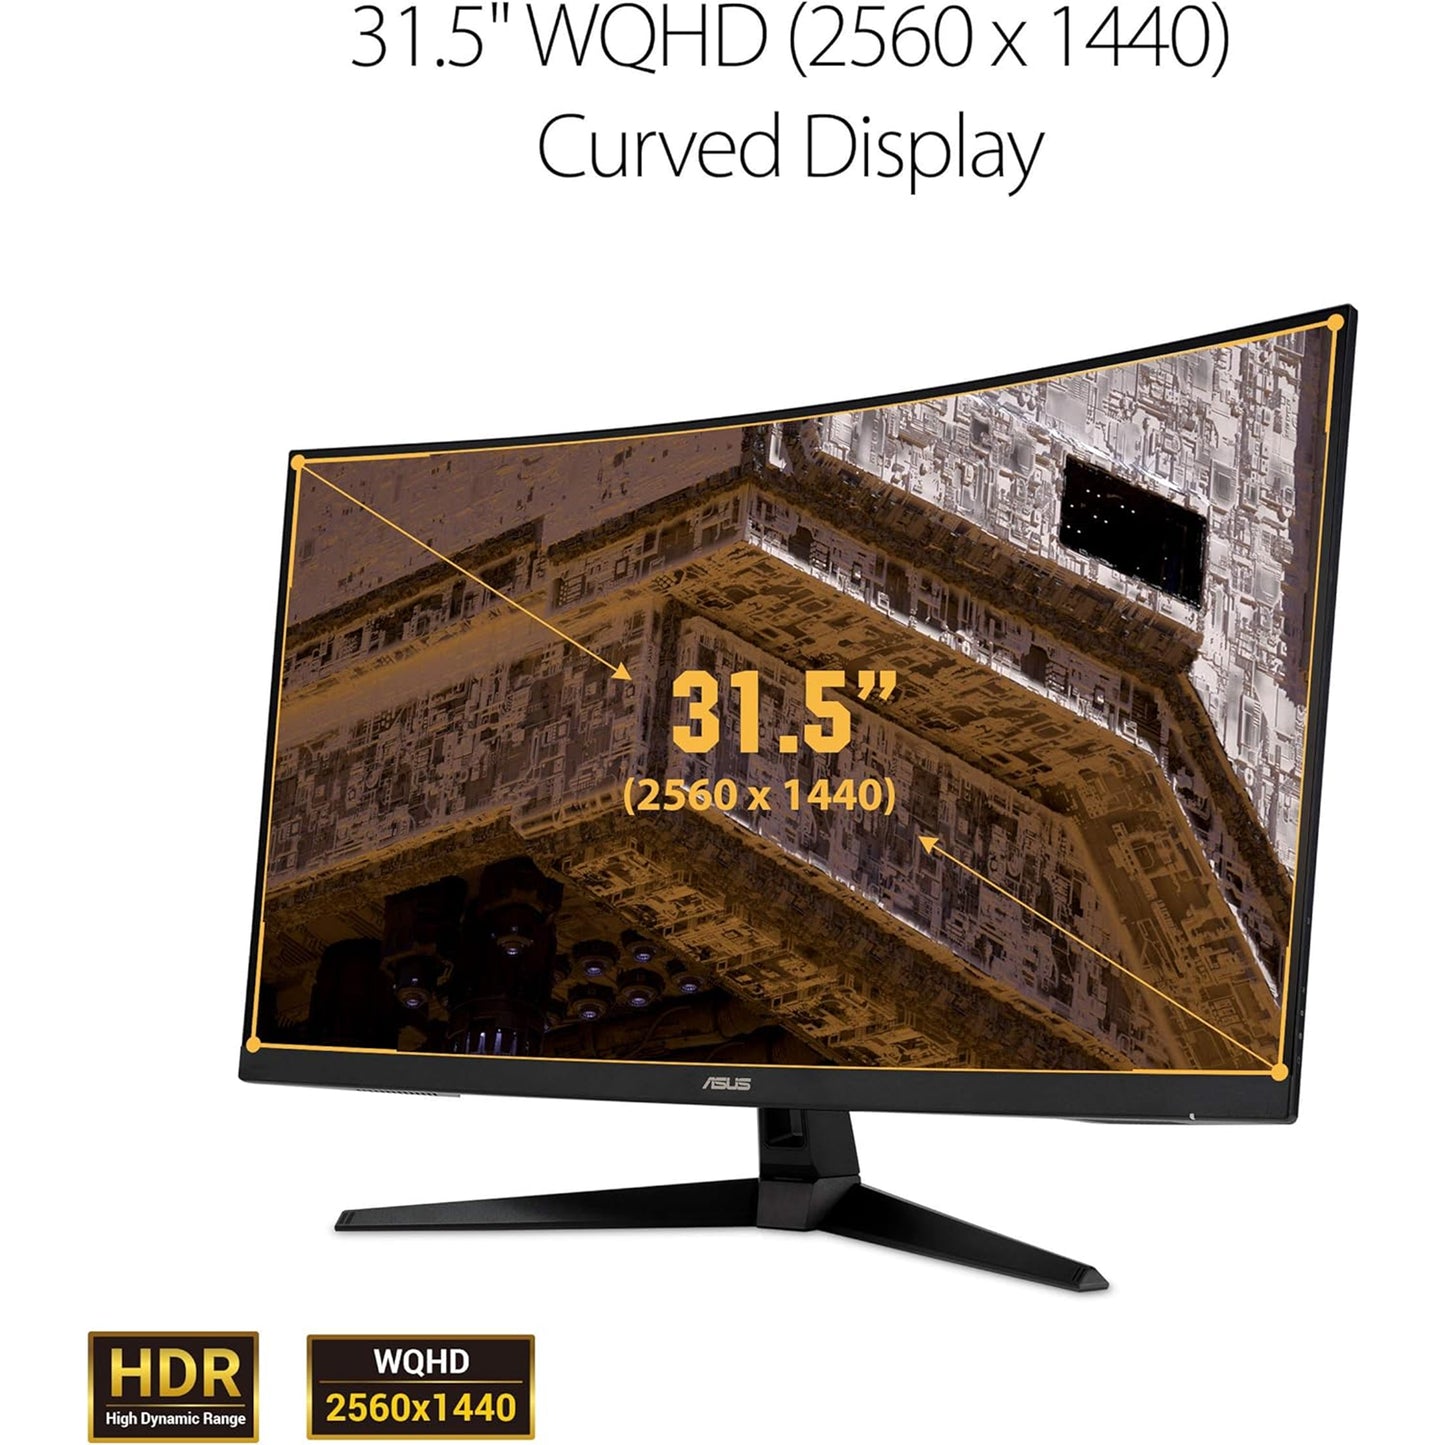 شاشة ASUS TUF Gaming 32 بوصة 1440P HDR منحنية (VG32VQ1B) - QHD (2560 × 1440)، 165 هرتز (يدعم 144 هرتز)، 1 مللي ثانية، طمس حركة منخفض للغاية، مكبر صوت، FreeSync Premium، قابل للتركيب على VESA، DisplayPort، HDMI، أسود